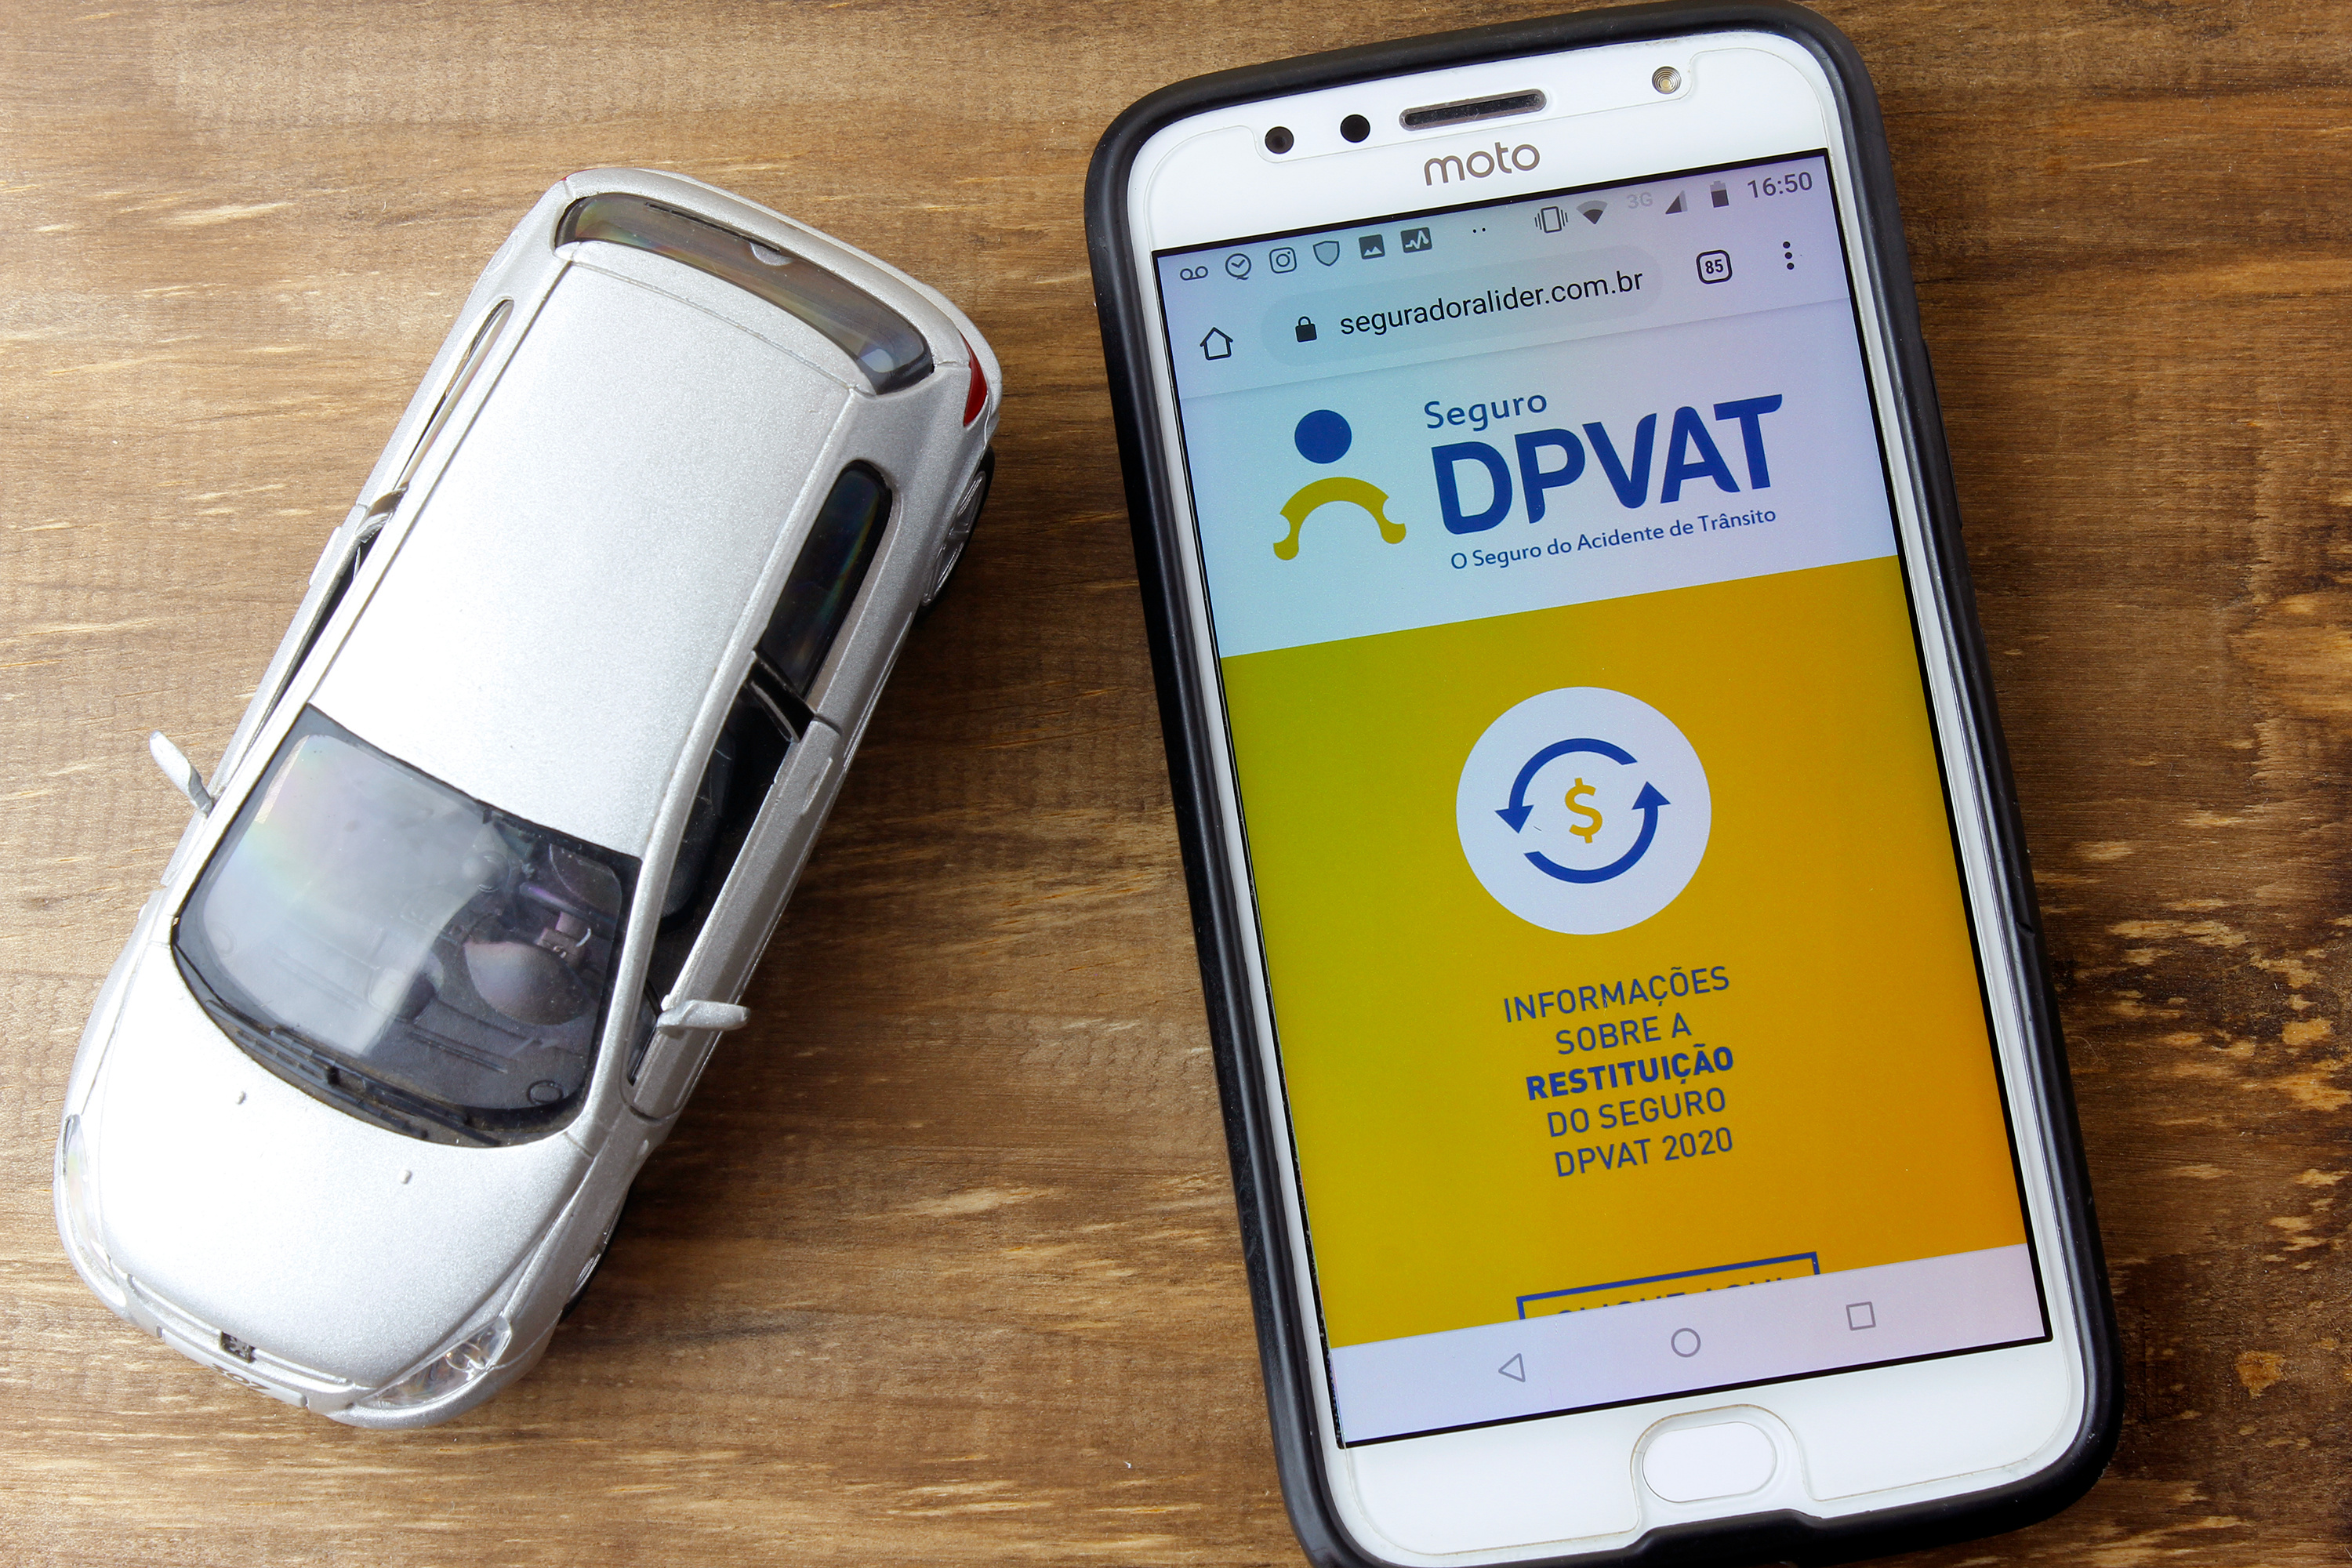 Celular com DPVAT aberto e miniatura de carro ao lado